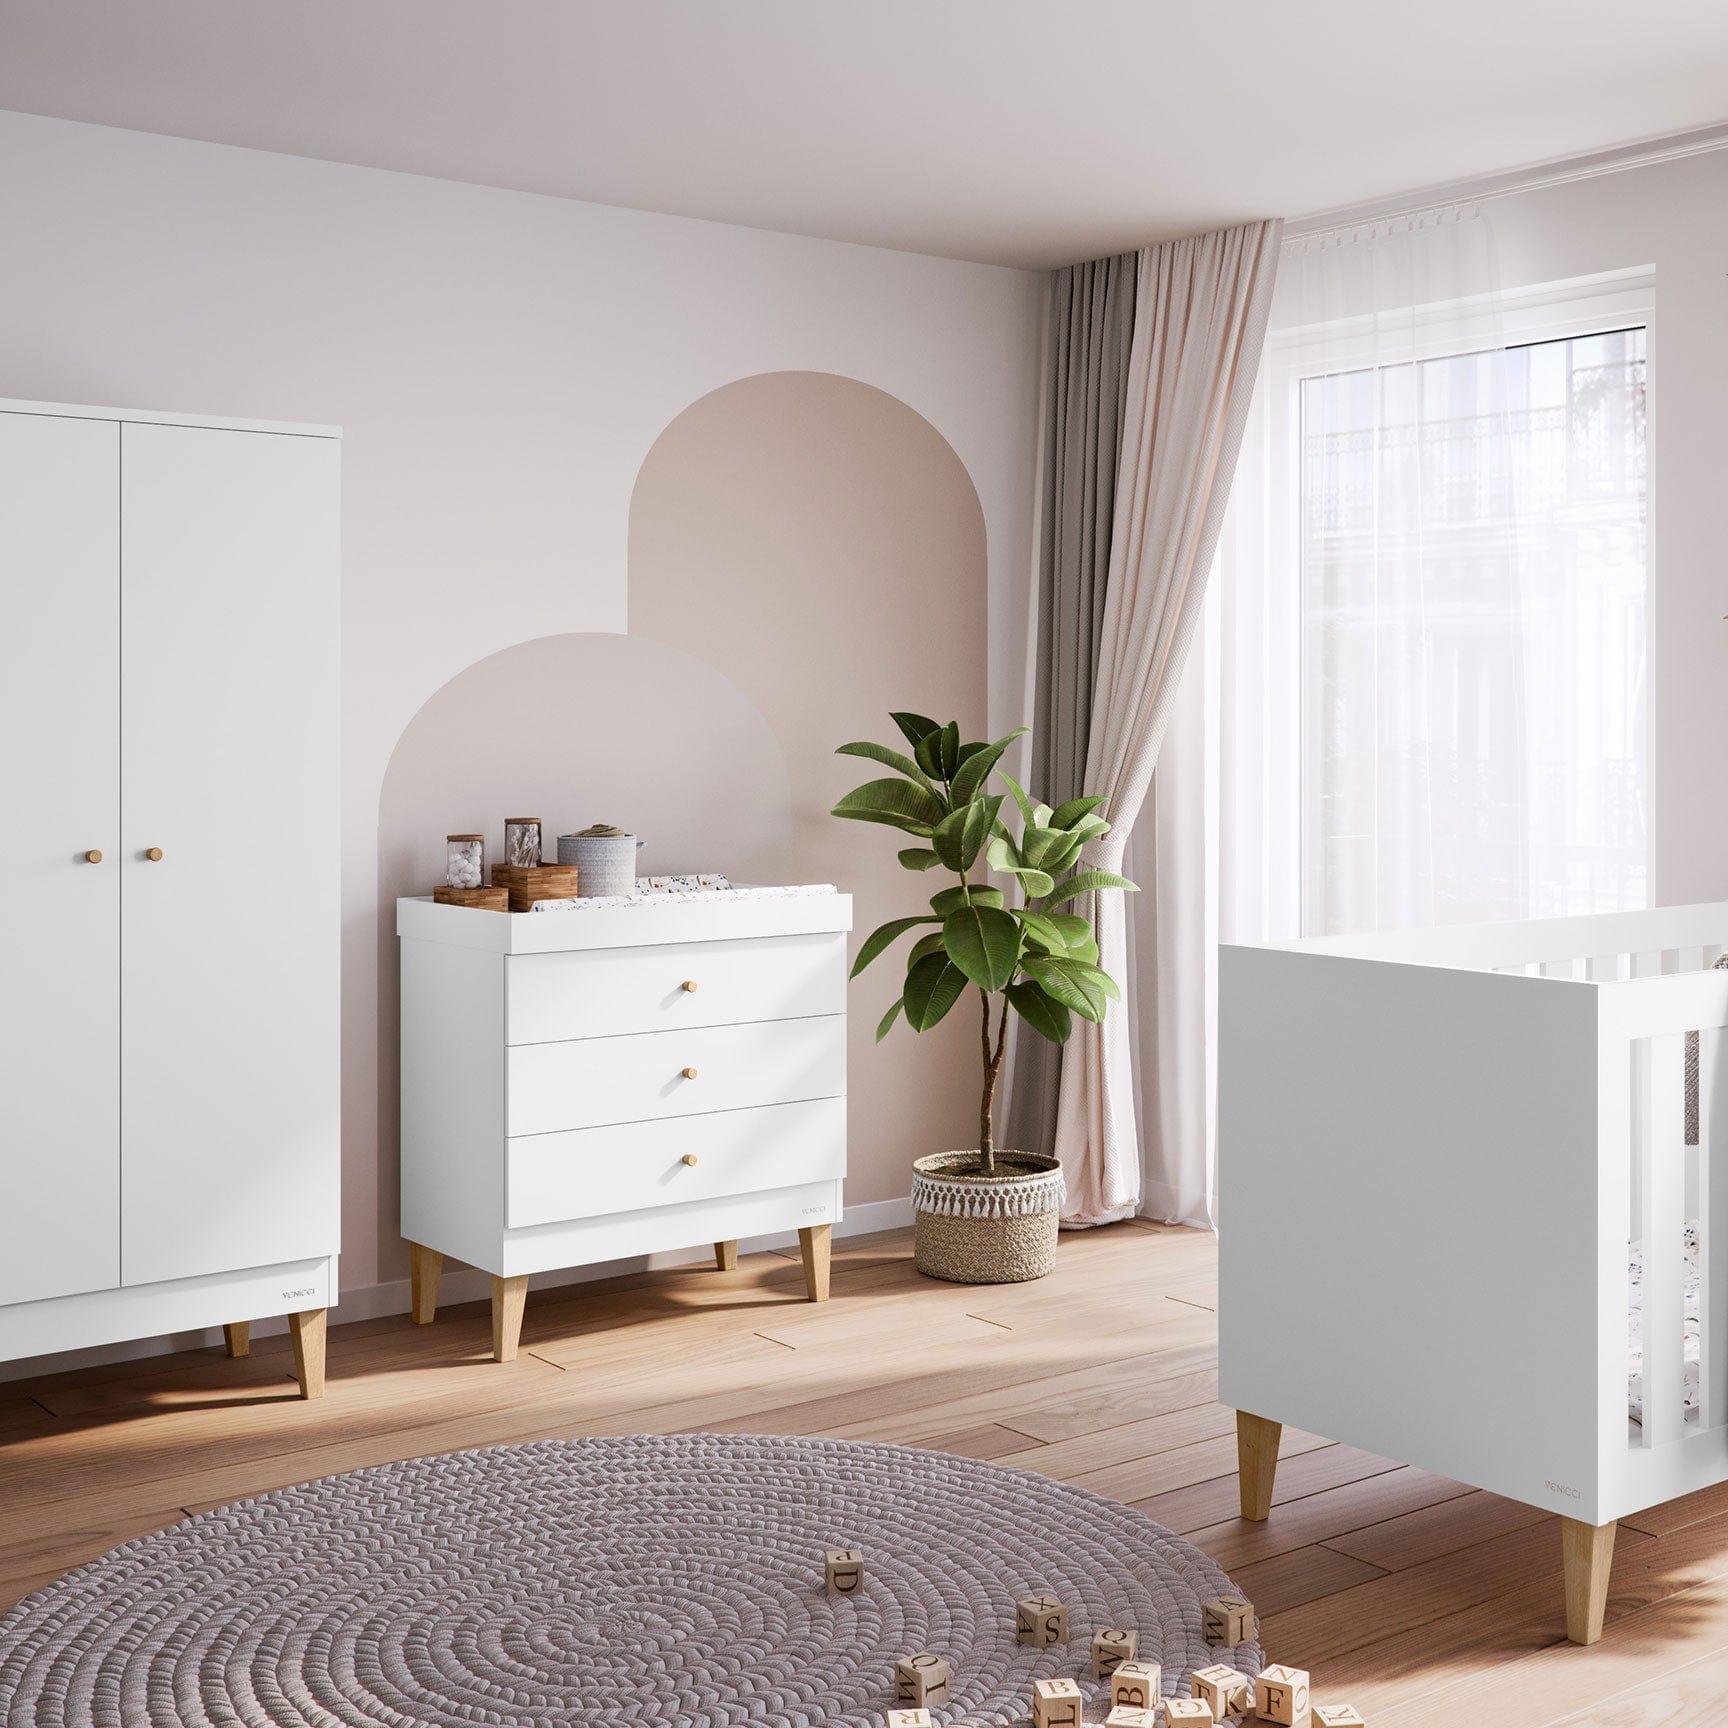 Venicci Saluzzo 2 Piece Wardrobe Roomset in Premium White Nursery Room Sets